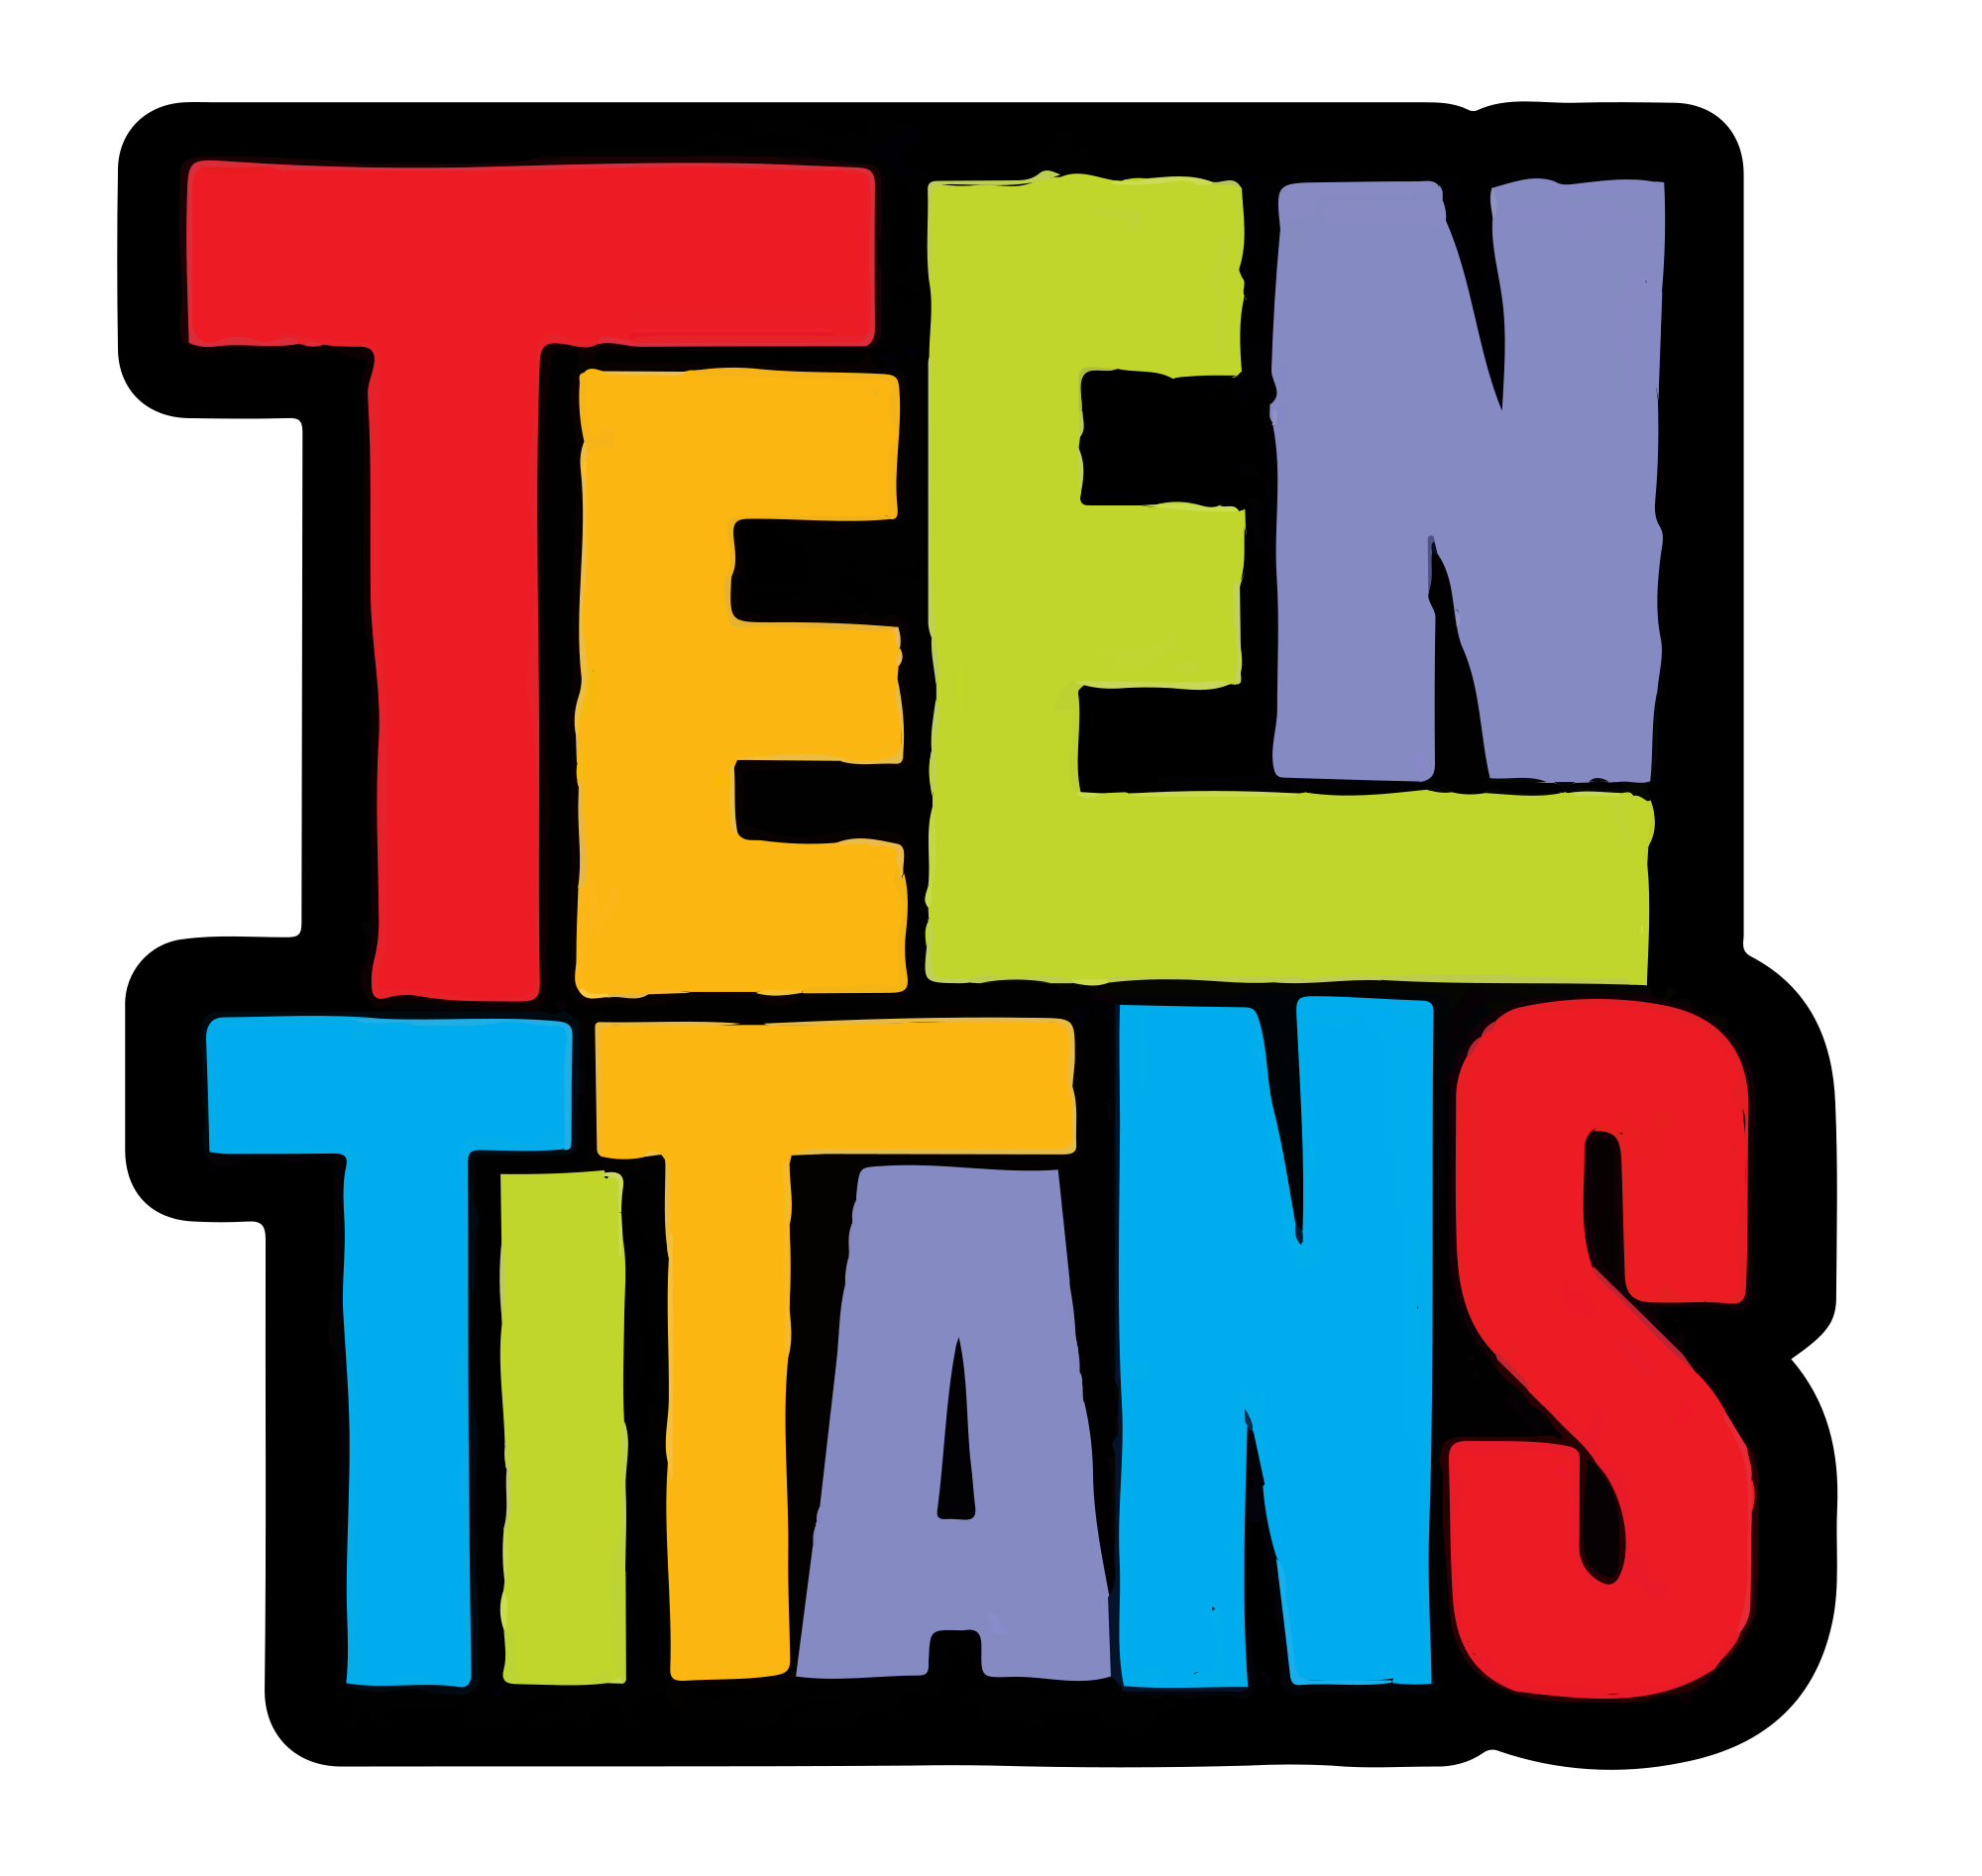 Lista de episódios de Jovens Titãs, Wiki Teen titans